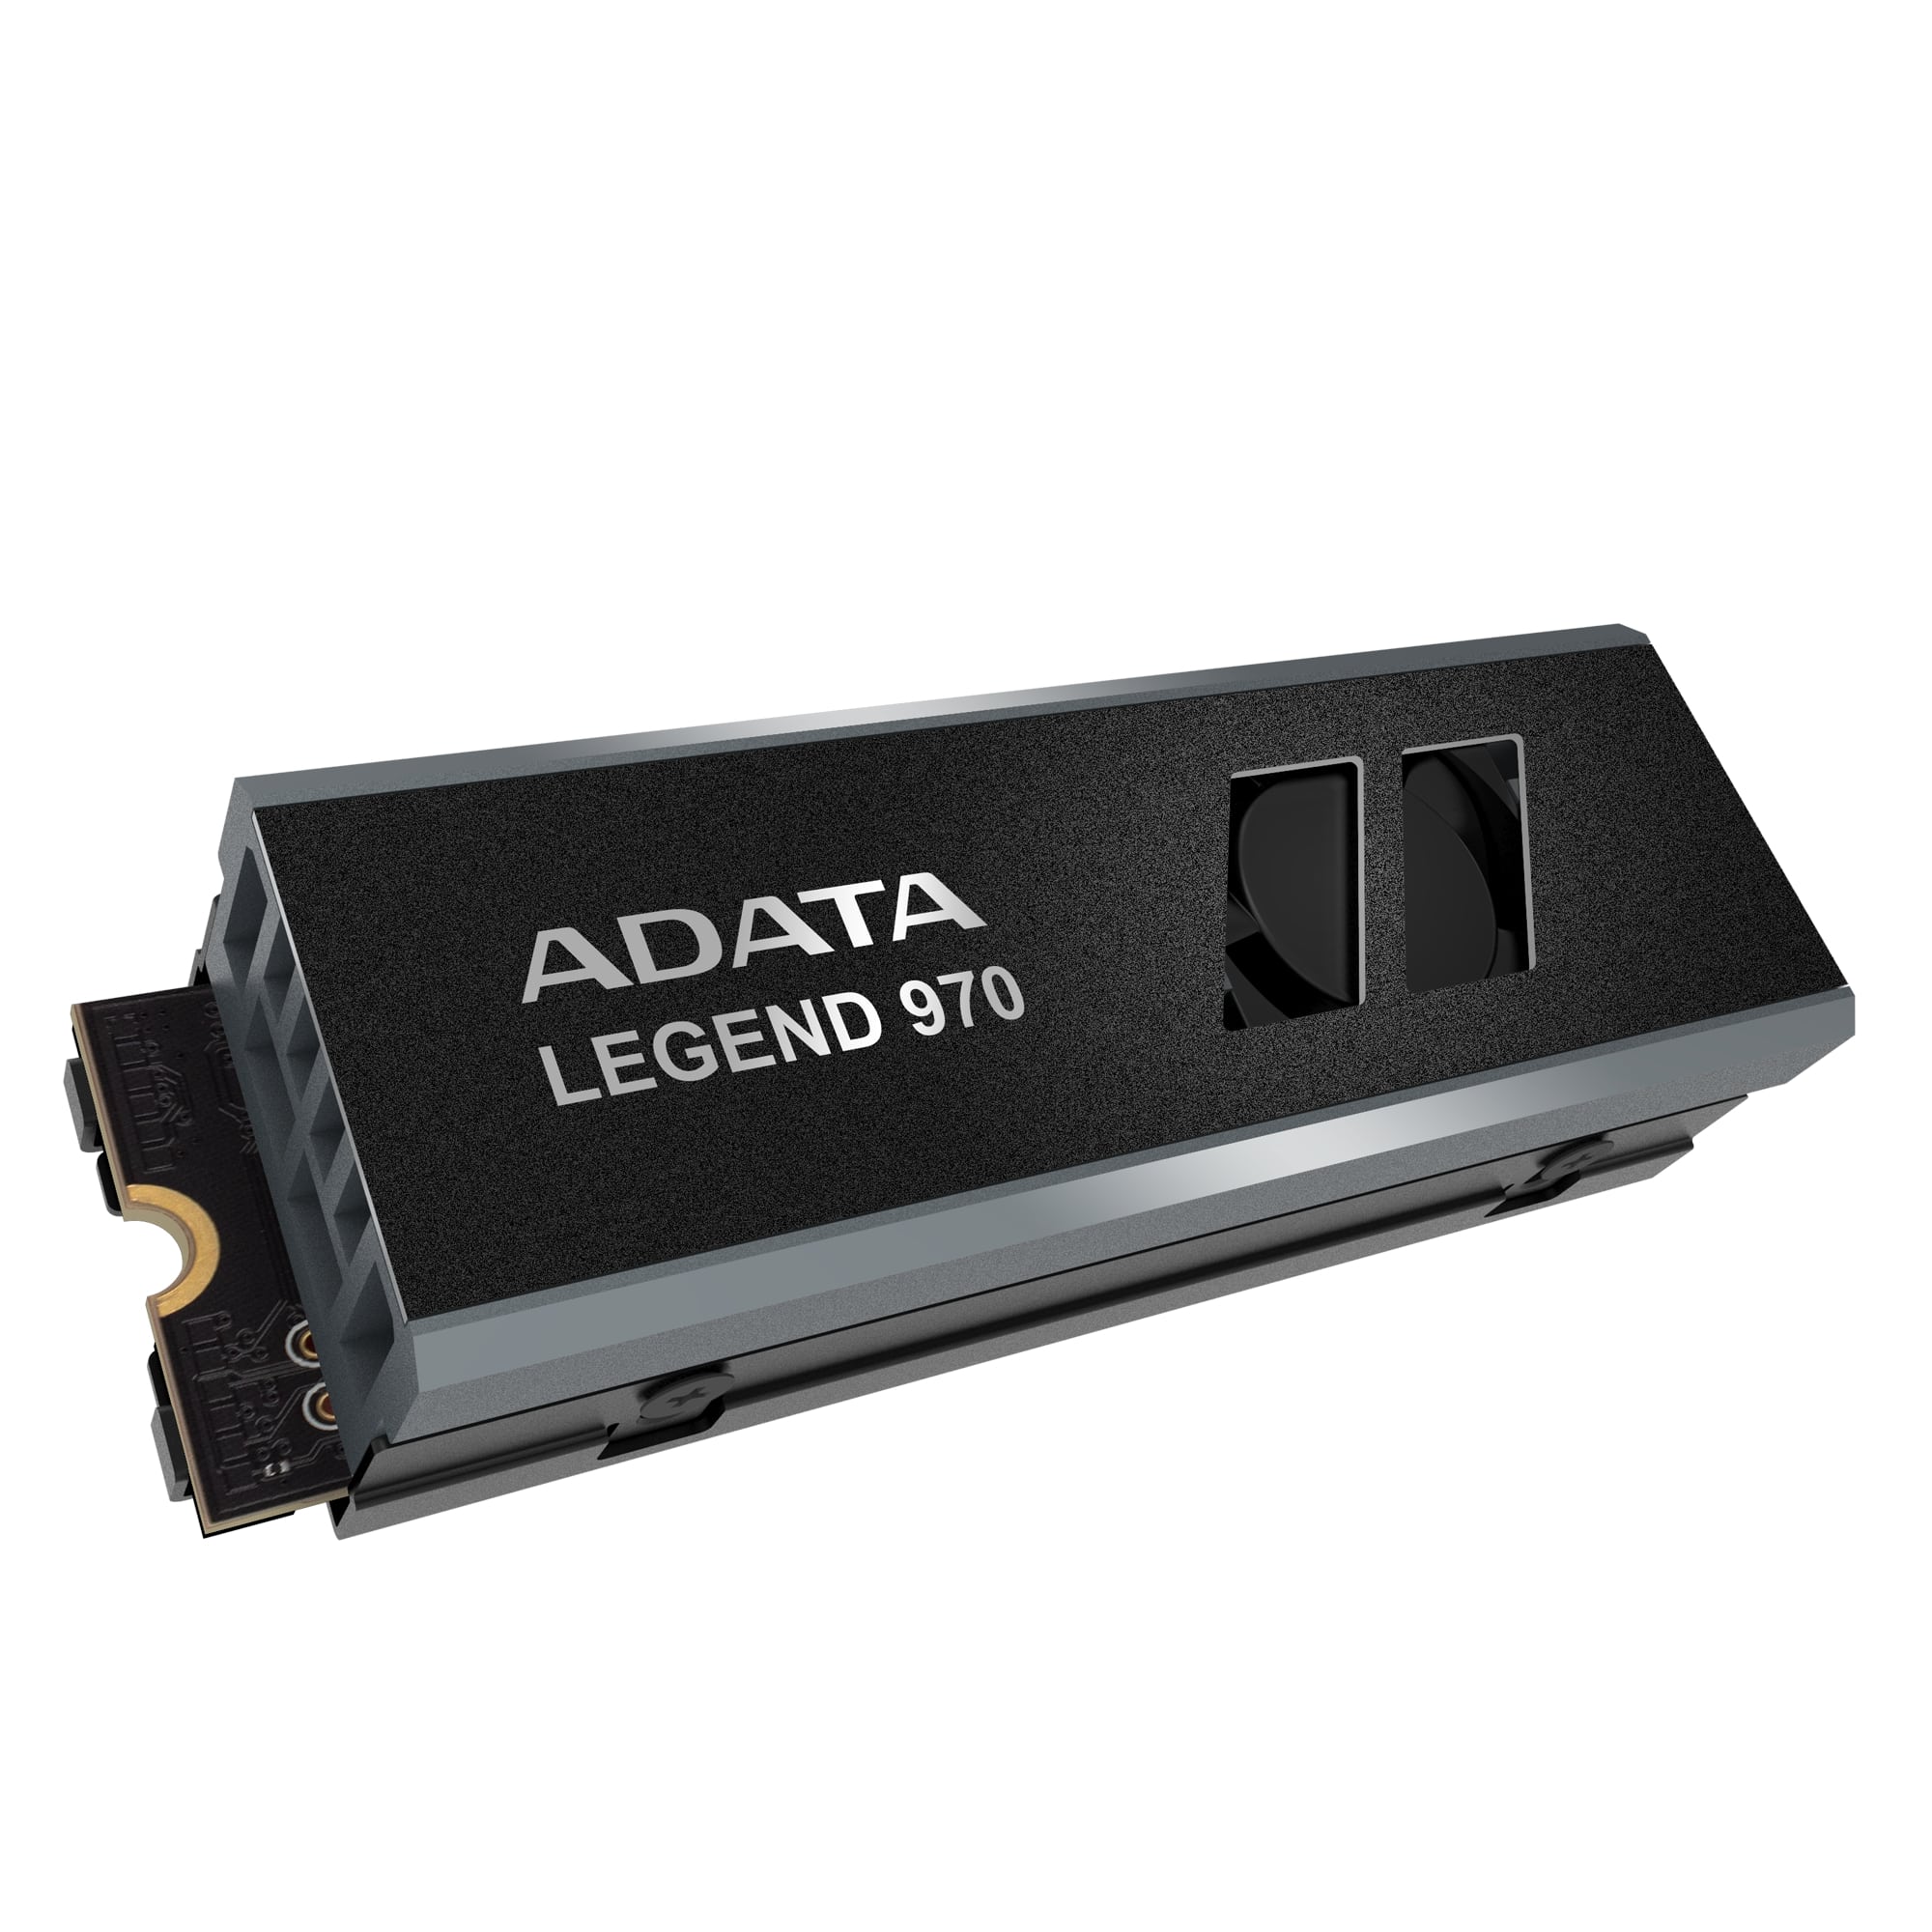 ADATA LEGEND 970/ 1TB/ SSD/ M.2 NVMe/ Čierna/ Heatsink/ 5R 